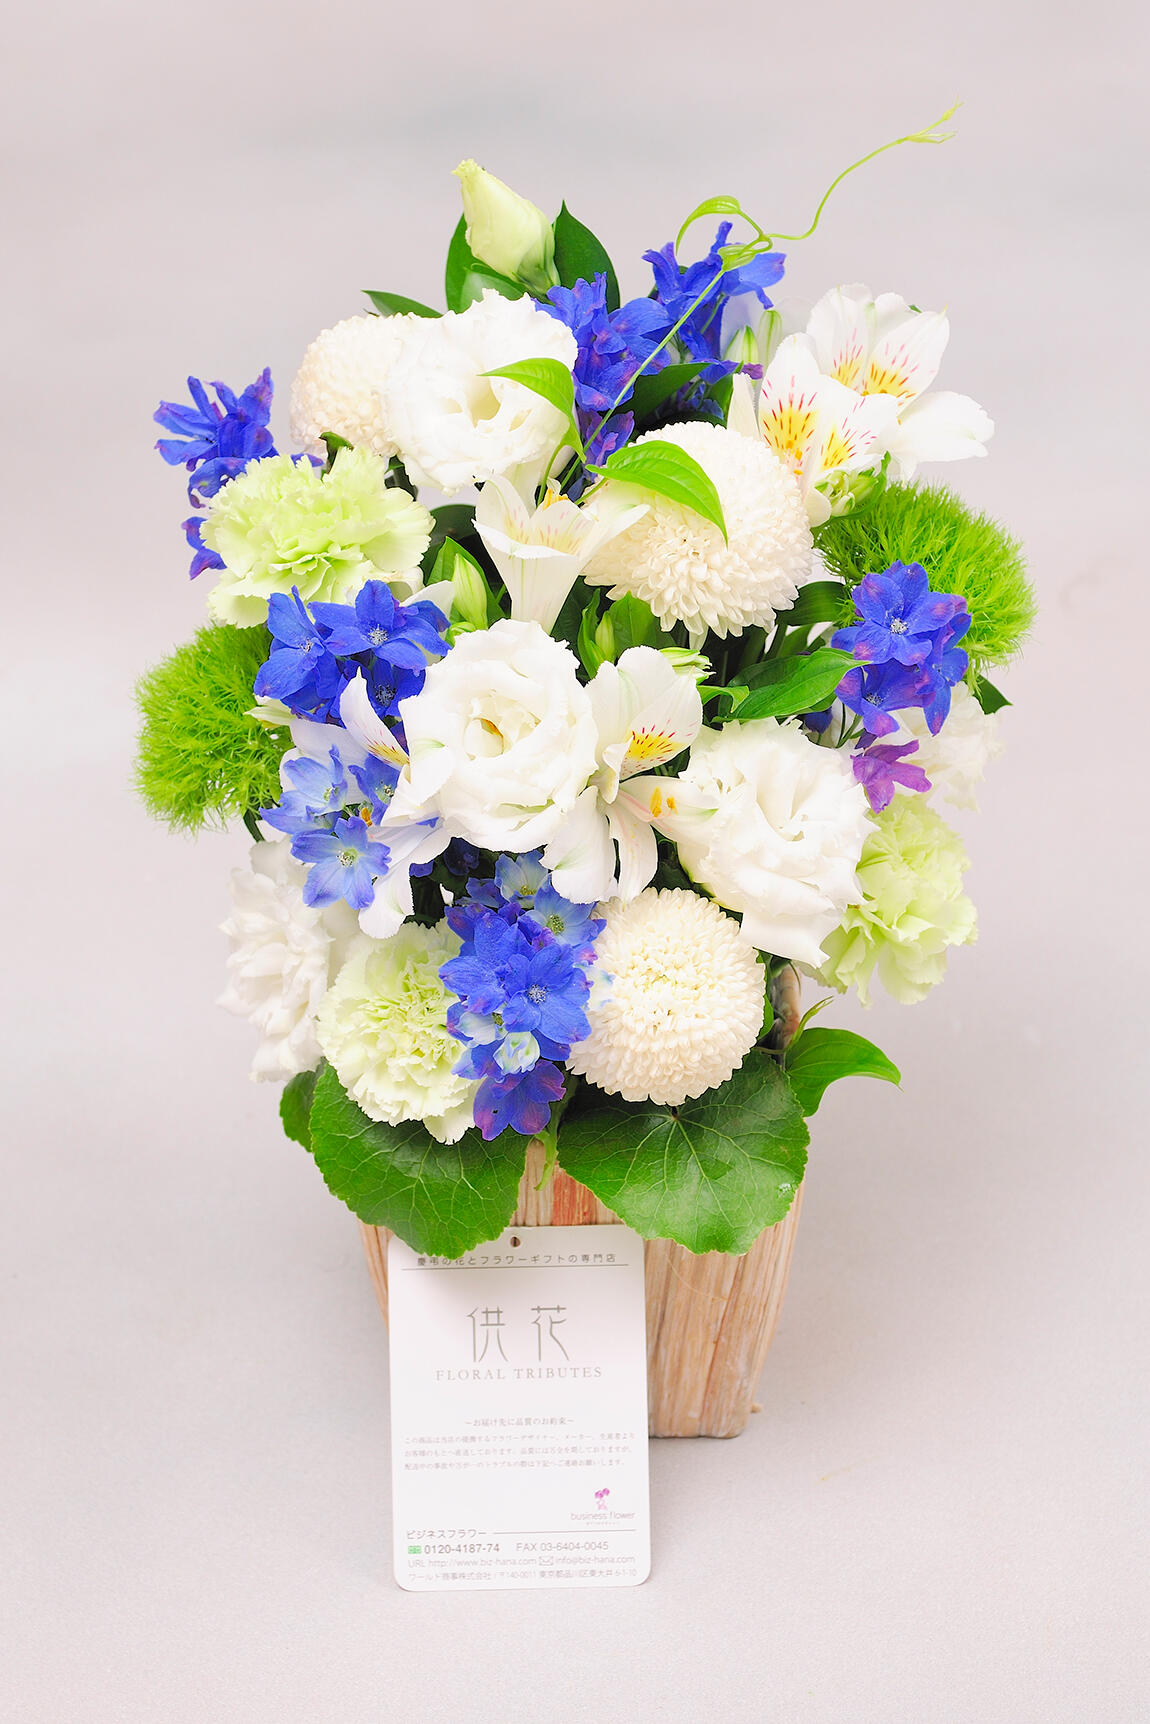 <p>ポンポン菊などを使用し、一般的な葬儀用のお花に比べ、少し明るい配色やお仕立てにしているのが特徴です。</p>